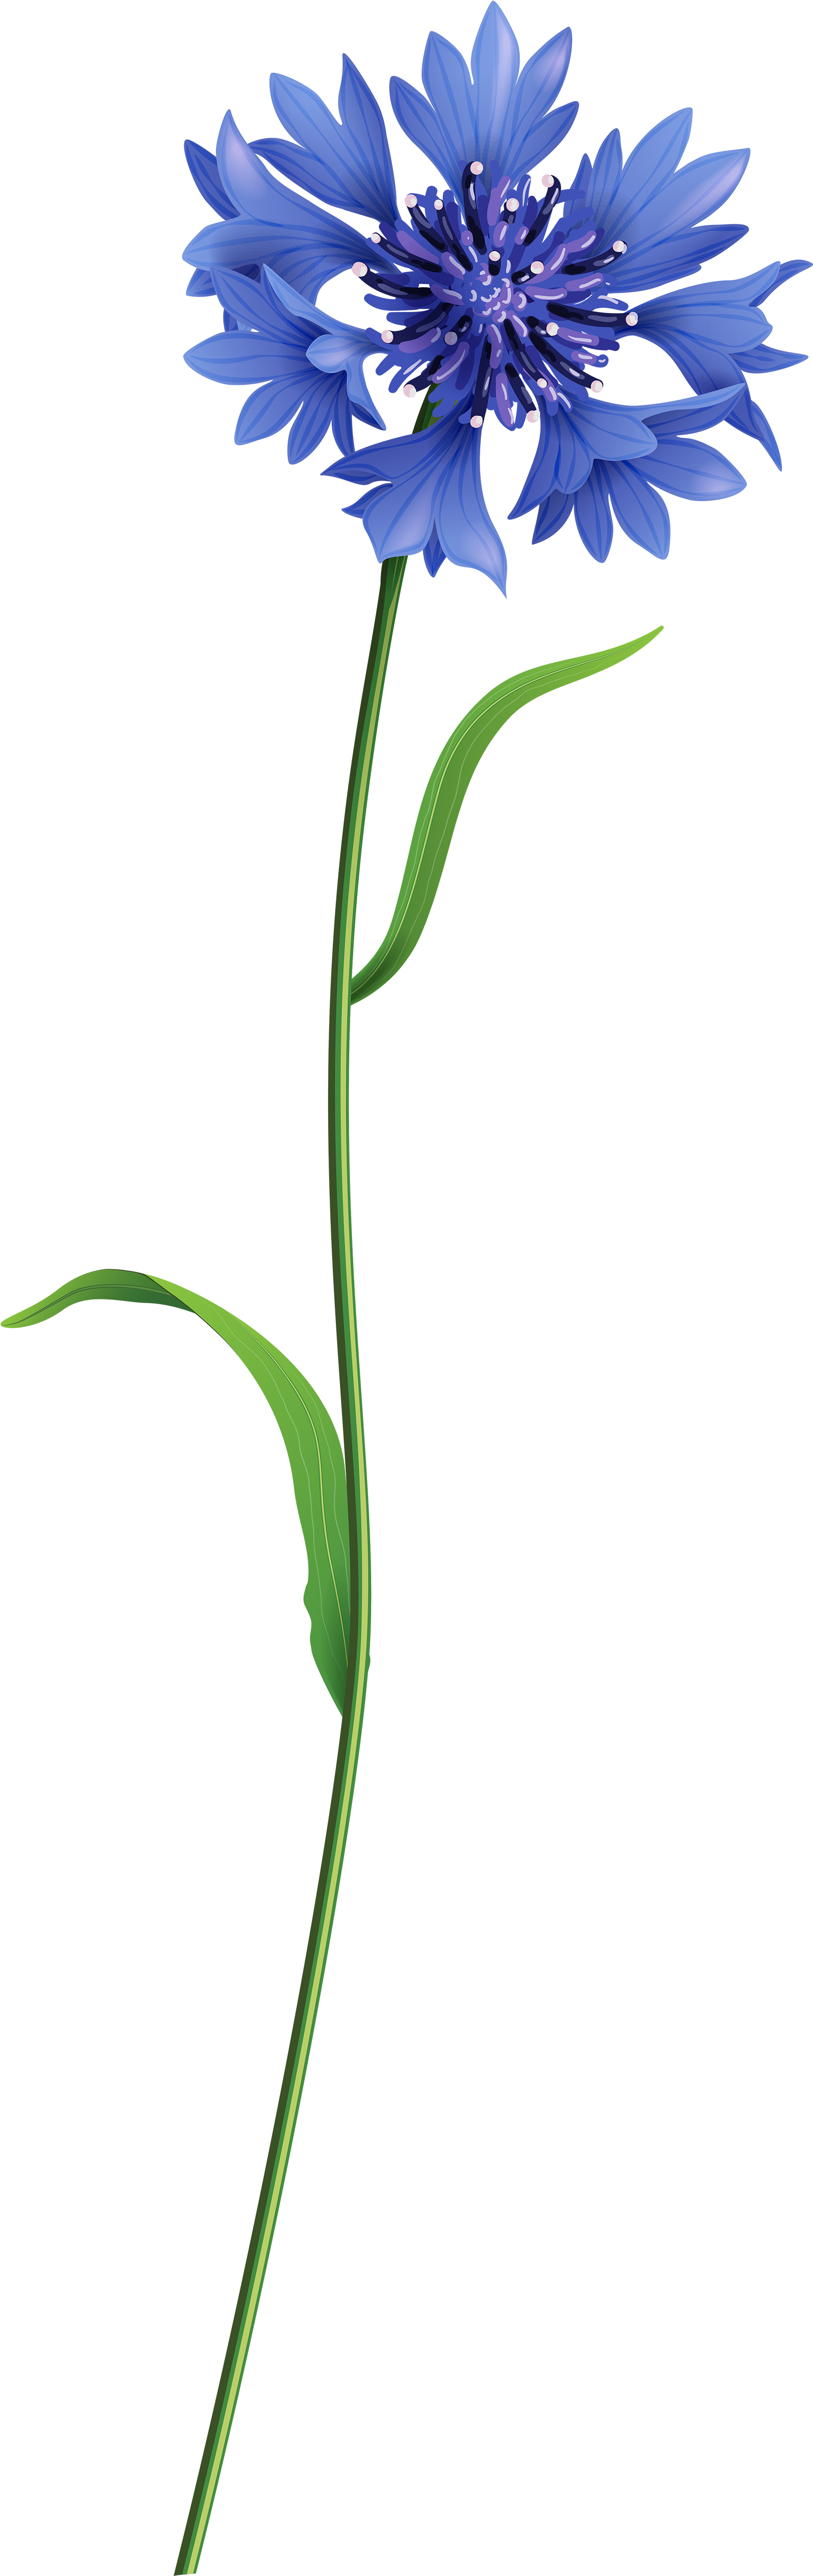 Grass Flower Png 1566 X 4960